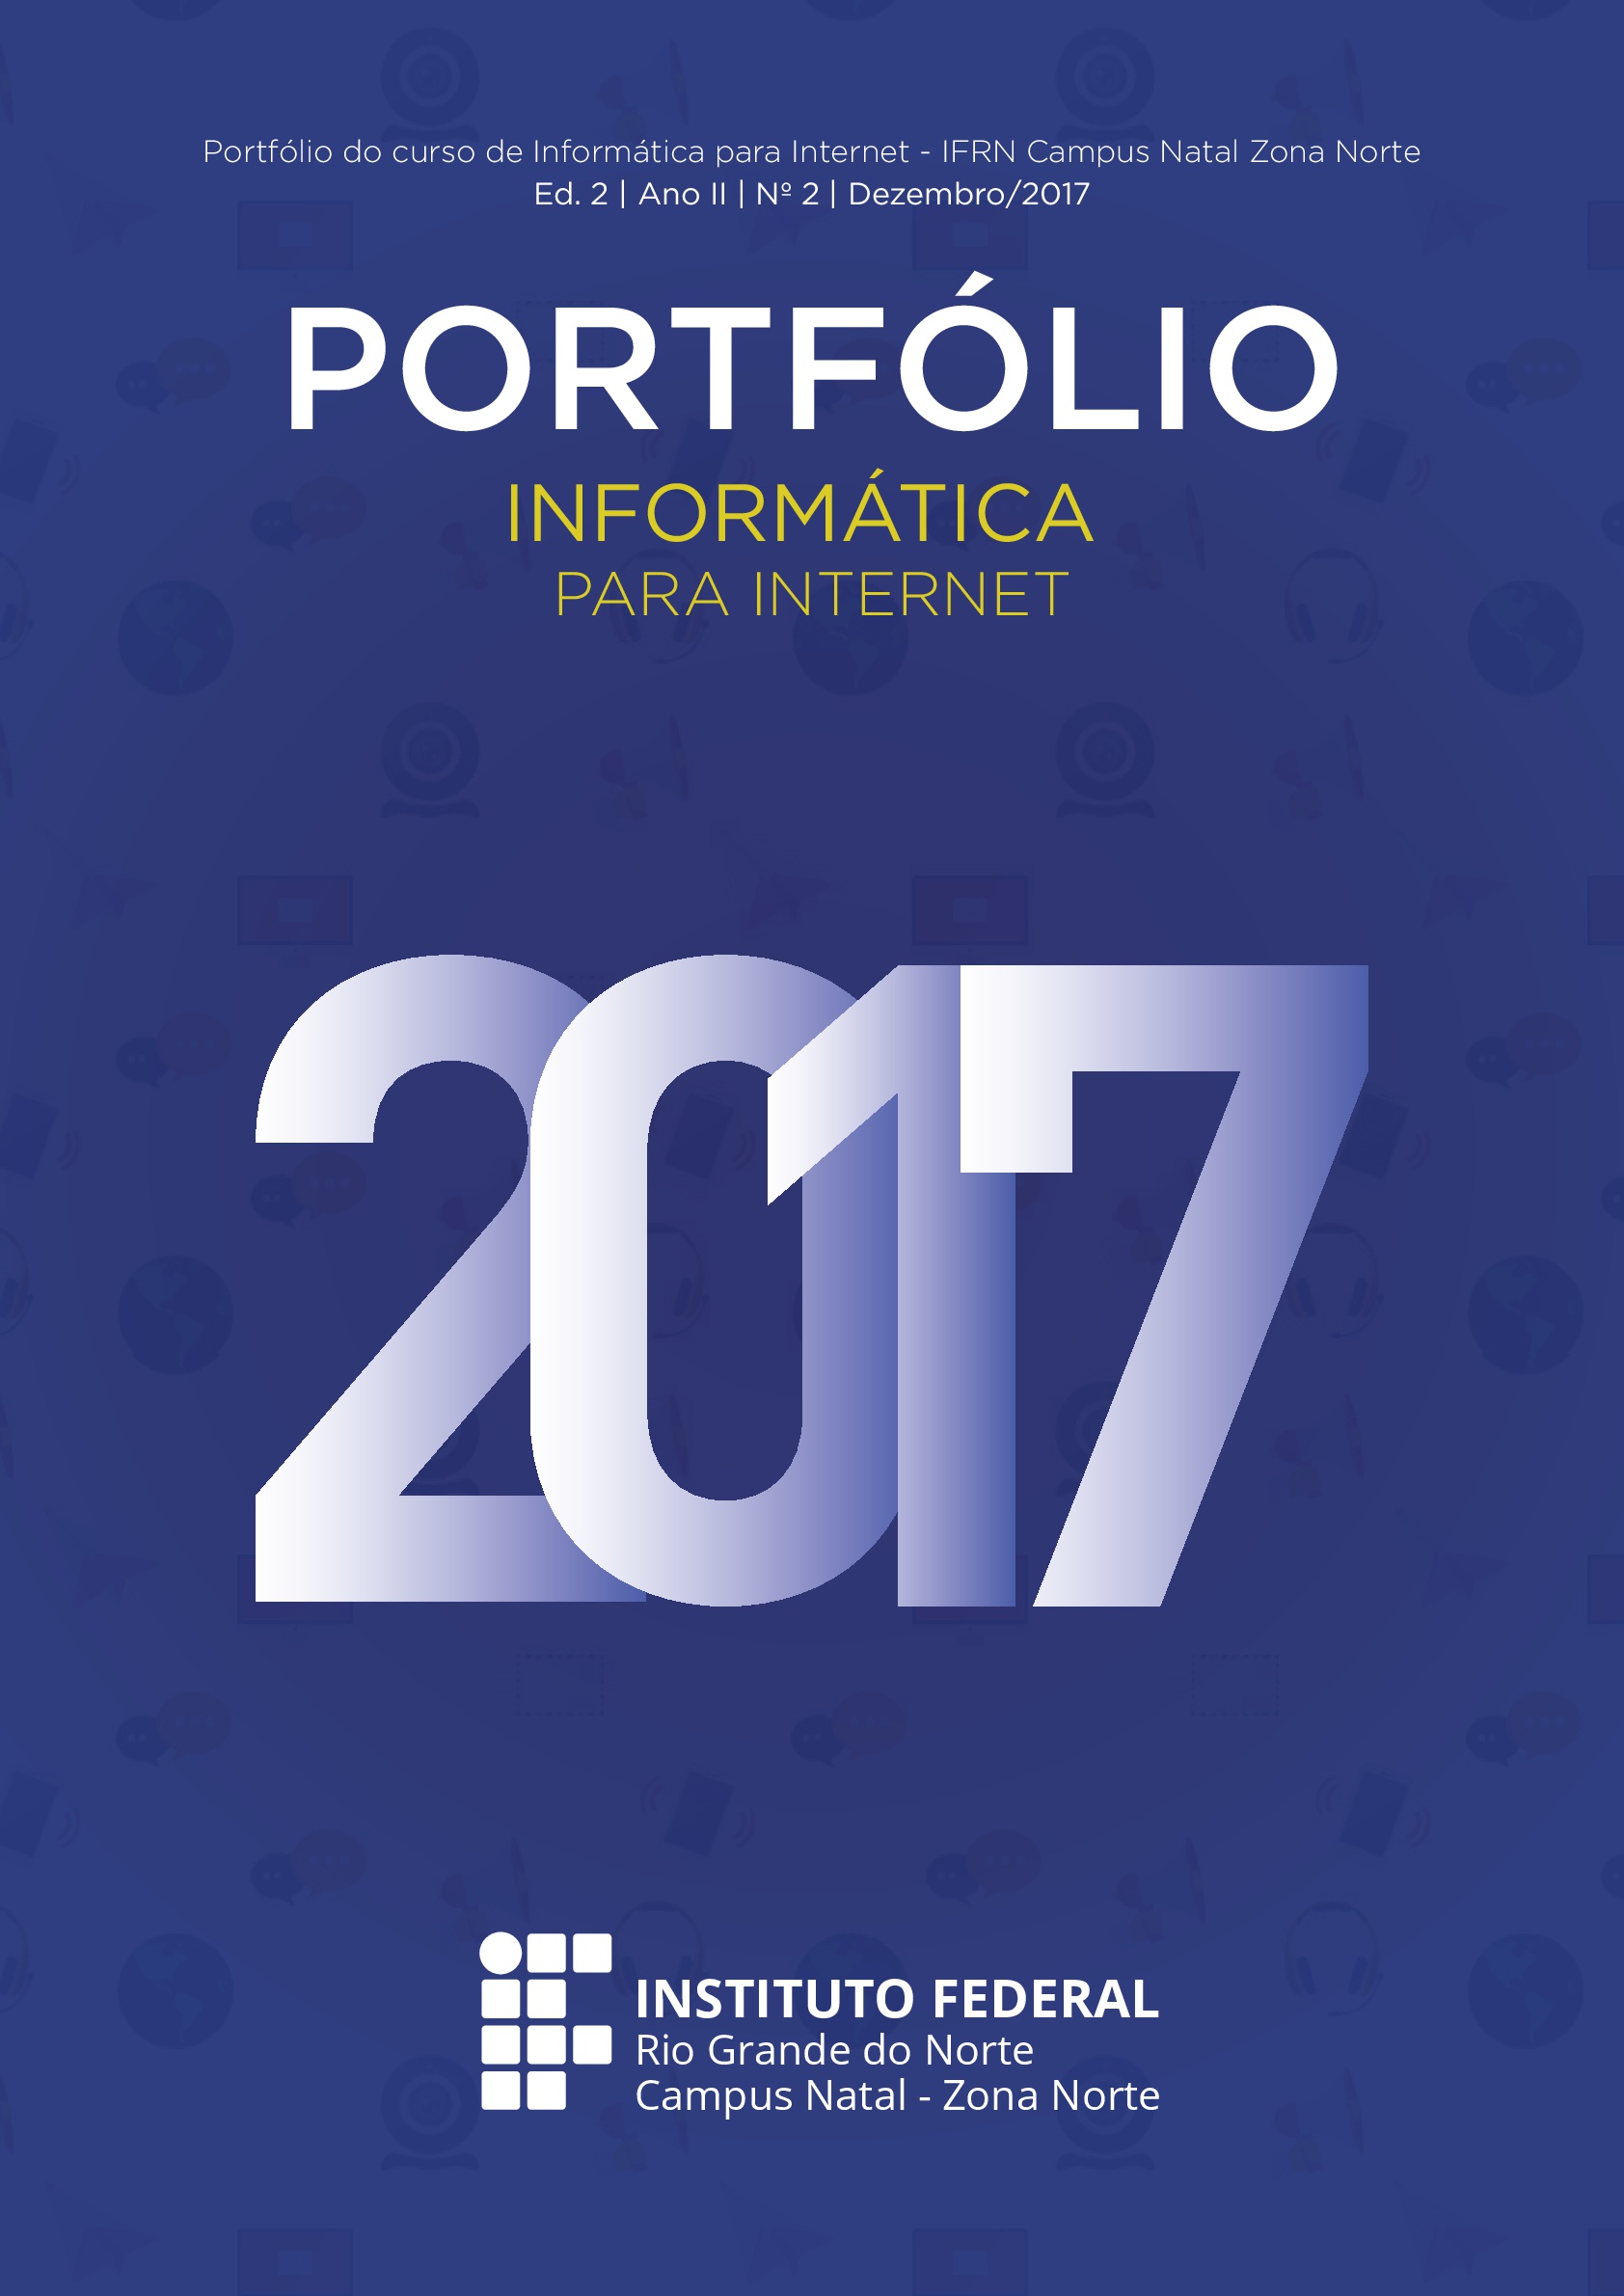 					View 2017: Portfólio Informática 2017
				